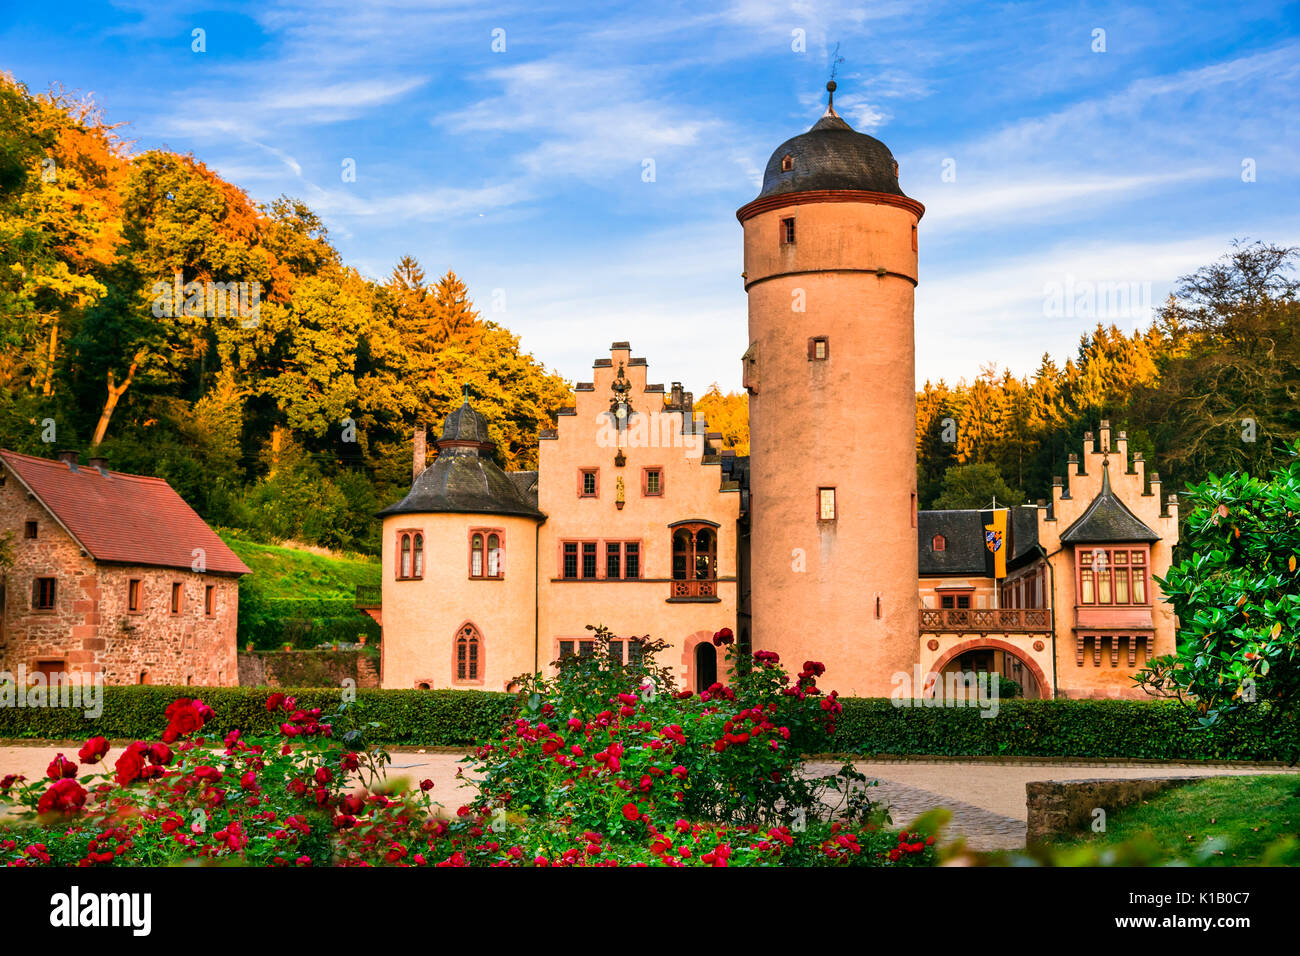 Bellos castillos románticos de Alemania - Schloss Mespelbrunn Foto de stock